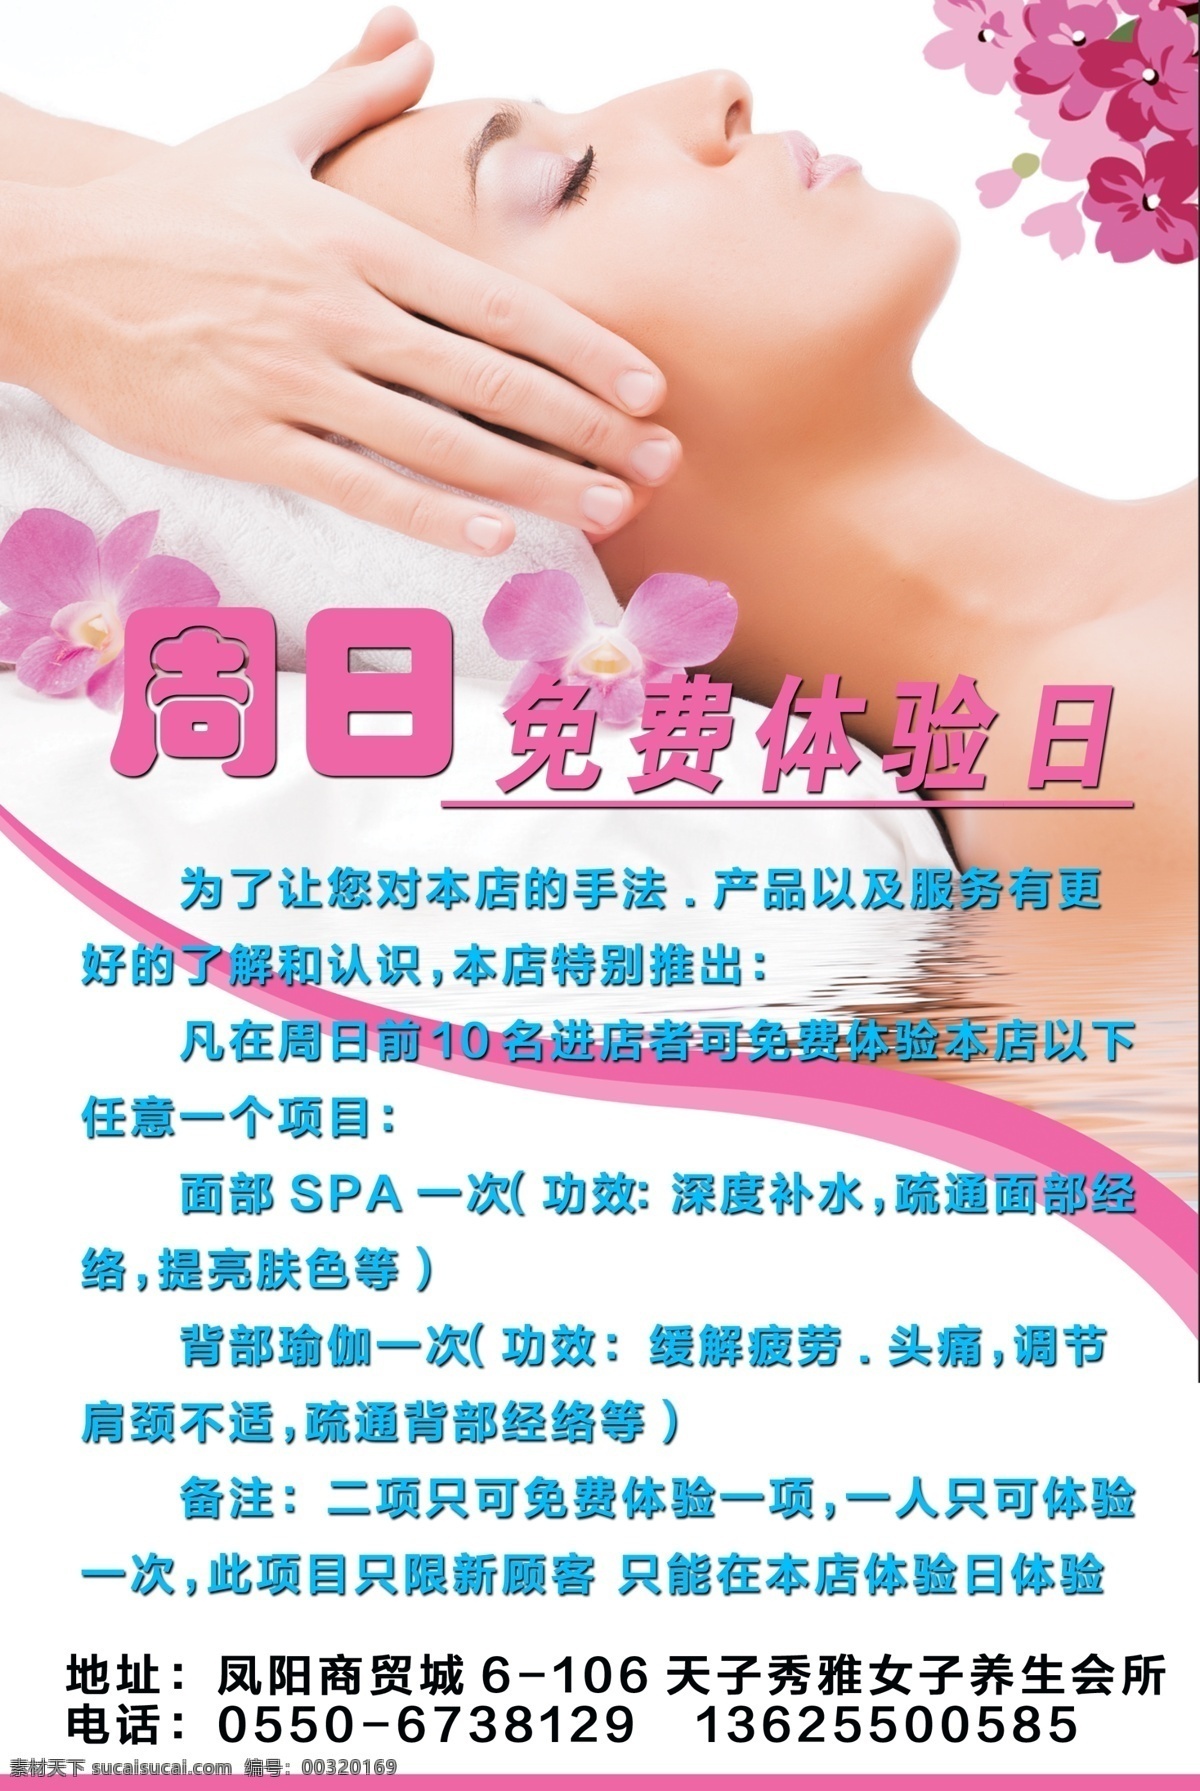 美容美体海报 周日 体验 免费 美容 按摩 海报 凤阳 广告设计模板 源文件